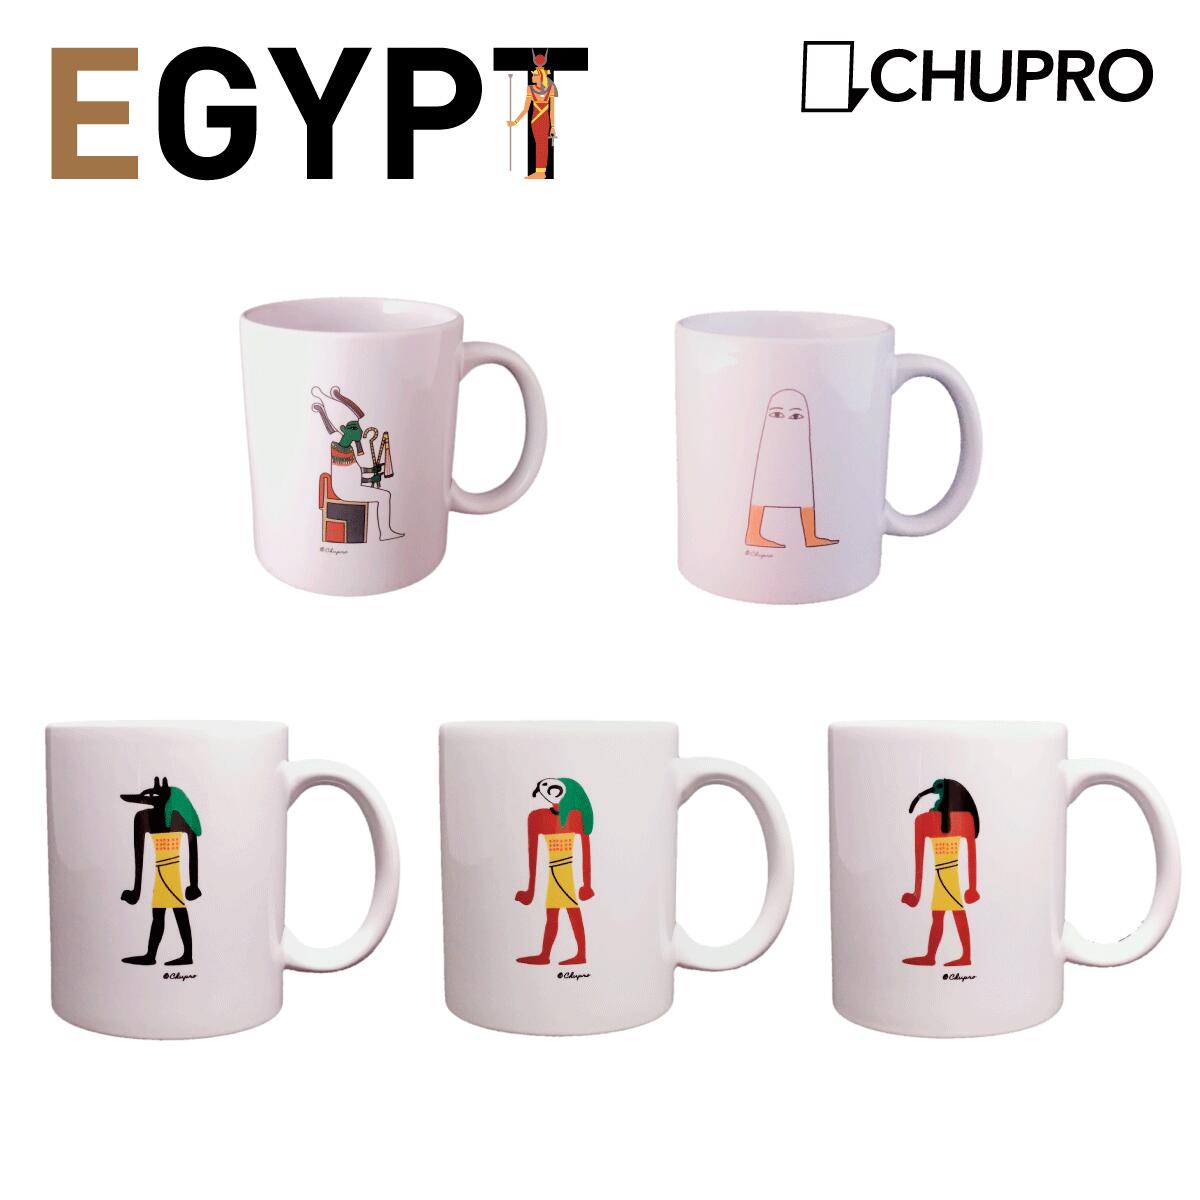 面白いマグカップ マグカップ 古代エジプト神 メジェド アヌビス オシリス ホルス トト コーヒーマグカップ エジプトグッズ エジプト雑貨 エジプトグッズ おもしろ雑貨 雑貨 ティーカップ 陶器 コーヒーマグ コップ エジプト神 キャラクター かわいい おもしろ プレゼント ギフト 贈り物